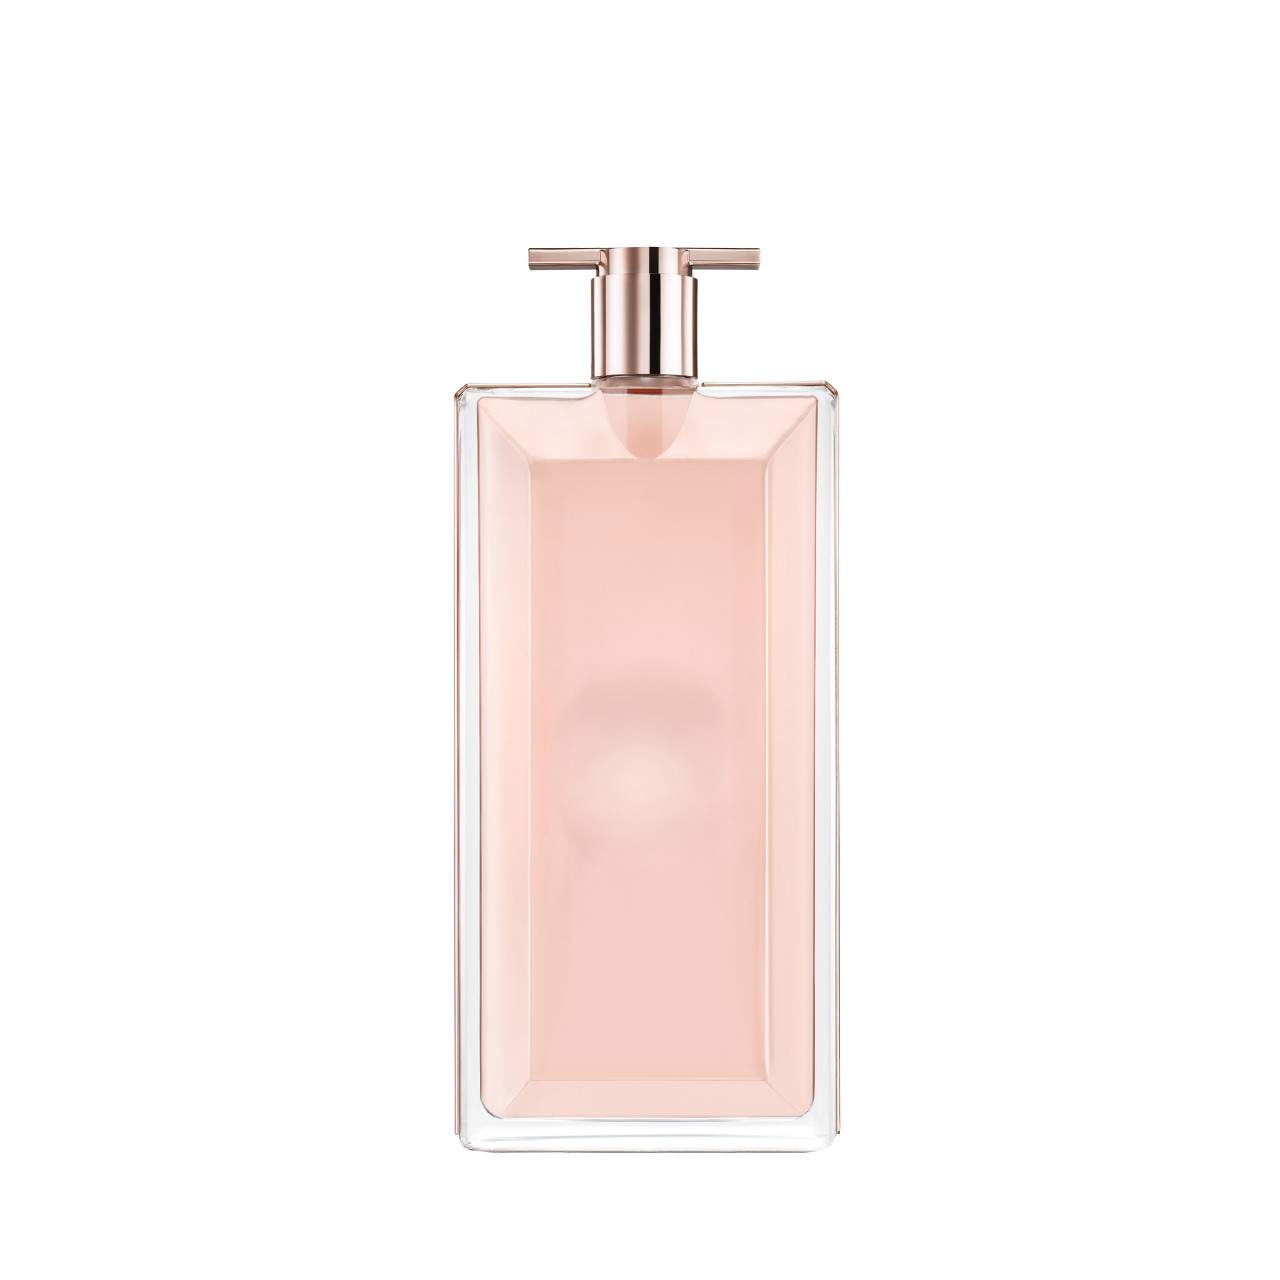 Lancôme - Idôle Eau de Parfum -  25 ml